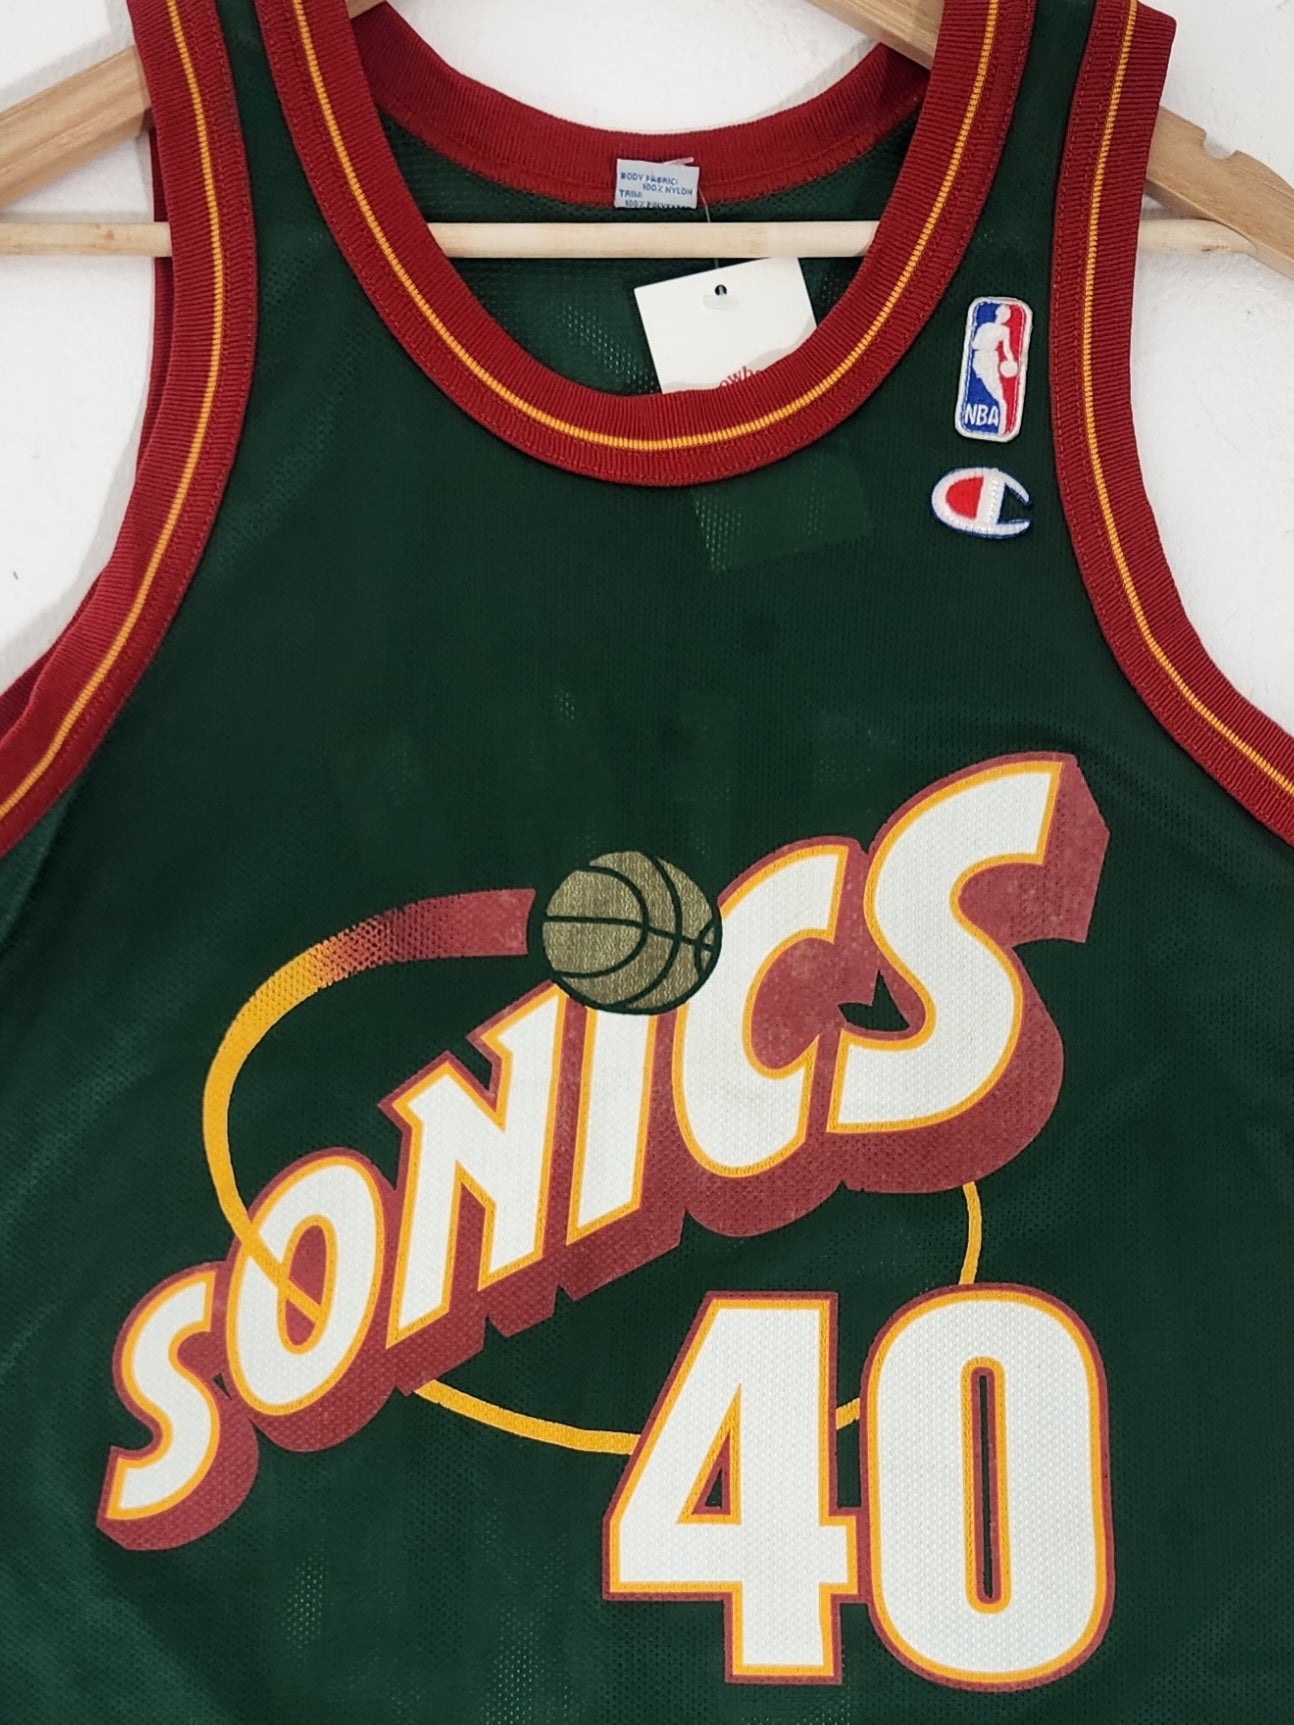 Nba Seattle Supersonics Basketball Jersey #40 Kemp